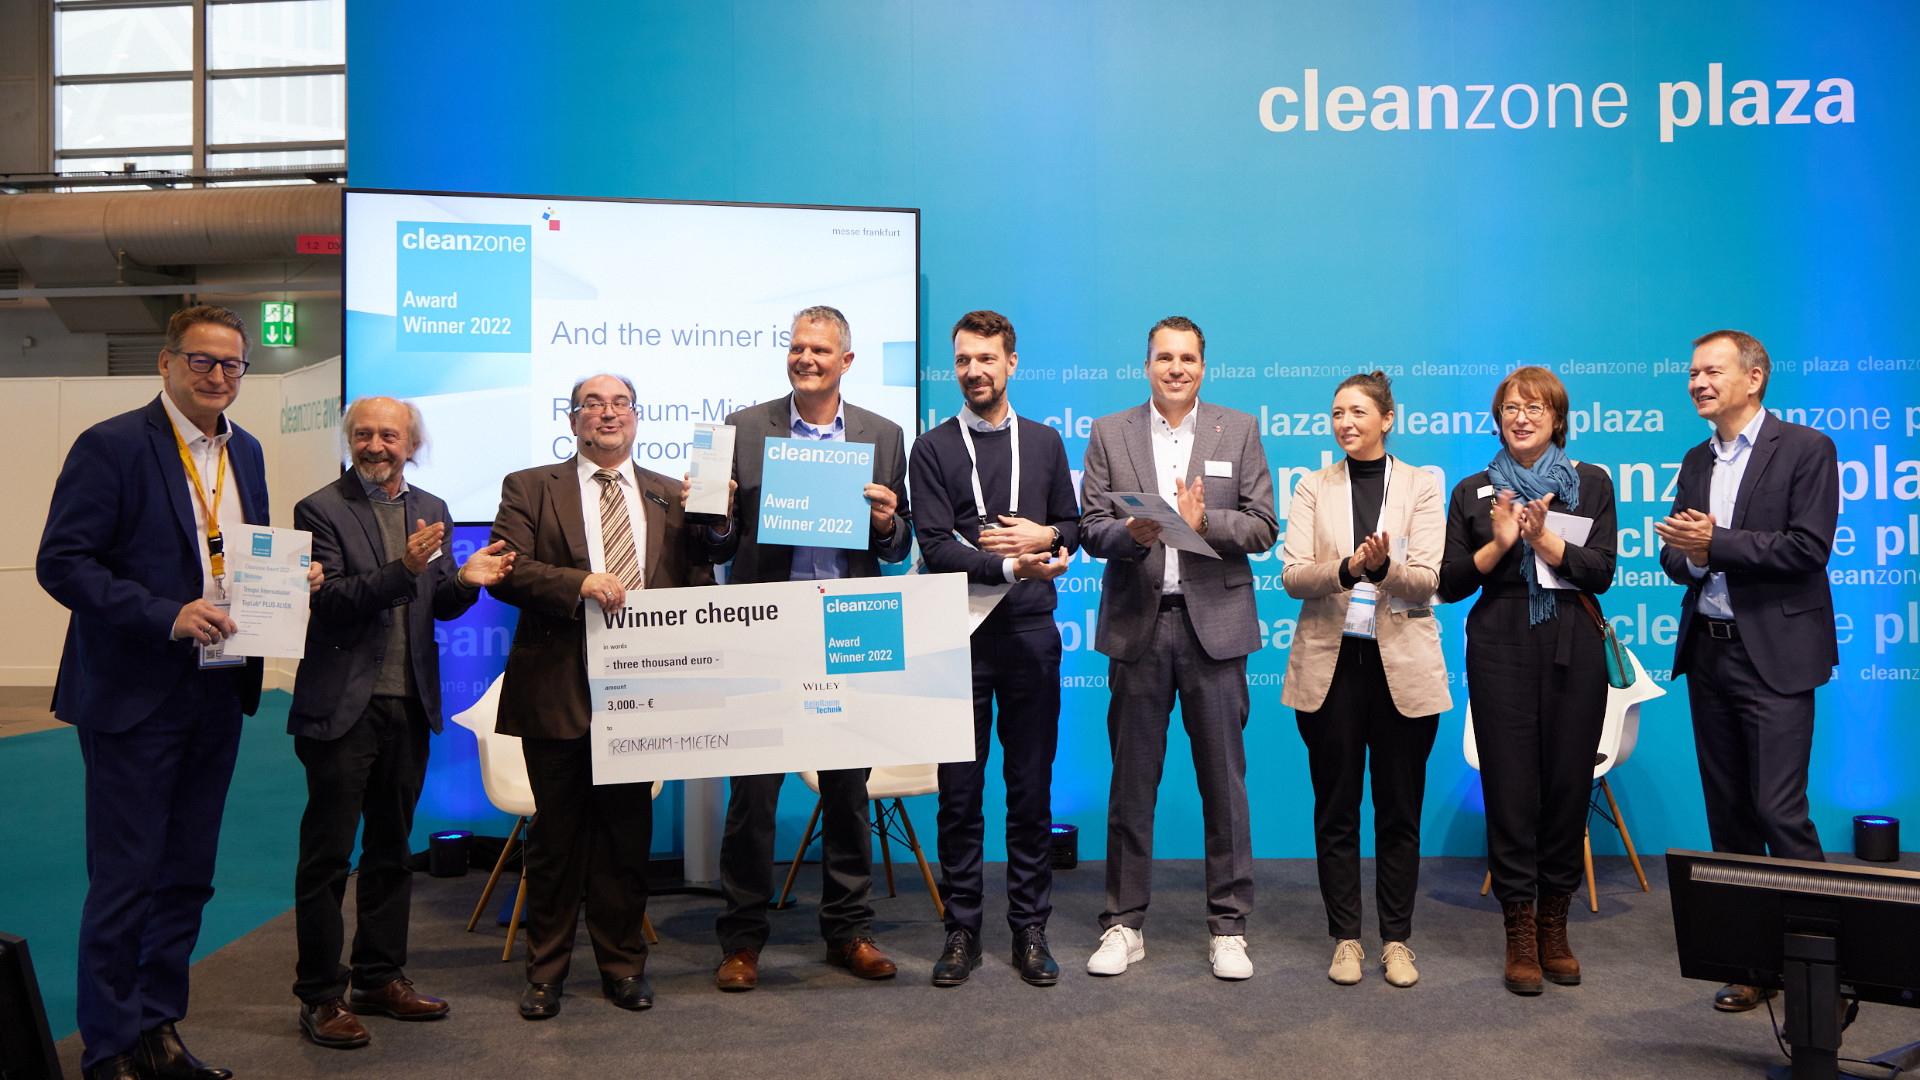 Der Cleanzone Award wird vergeben für innovative Produkte oder Lösungen aus dem Reinraumbereich. Quelle: Messe Frankfurt